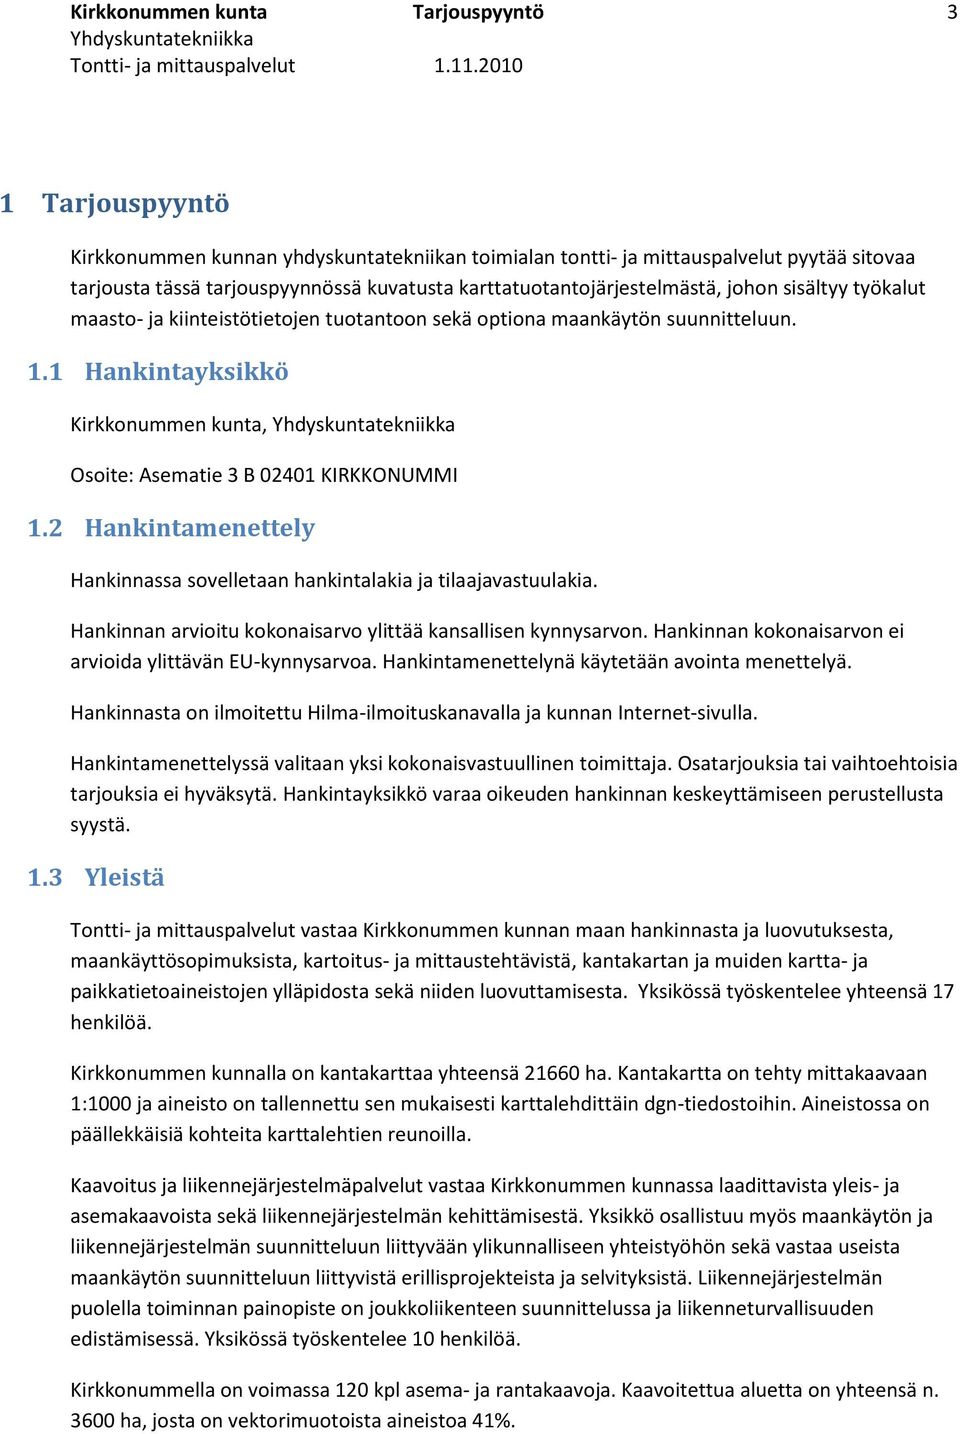 1 Hankintayksikkö Kirkkonummen kunta, Osoite: Asematie 3 B 02401 KIRKKONUMMI 1.2 Hankintamenettely Hankinnassa sovelletaan hankintalakia ja tilaajavastuulakia.